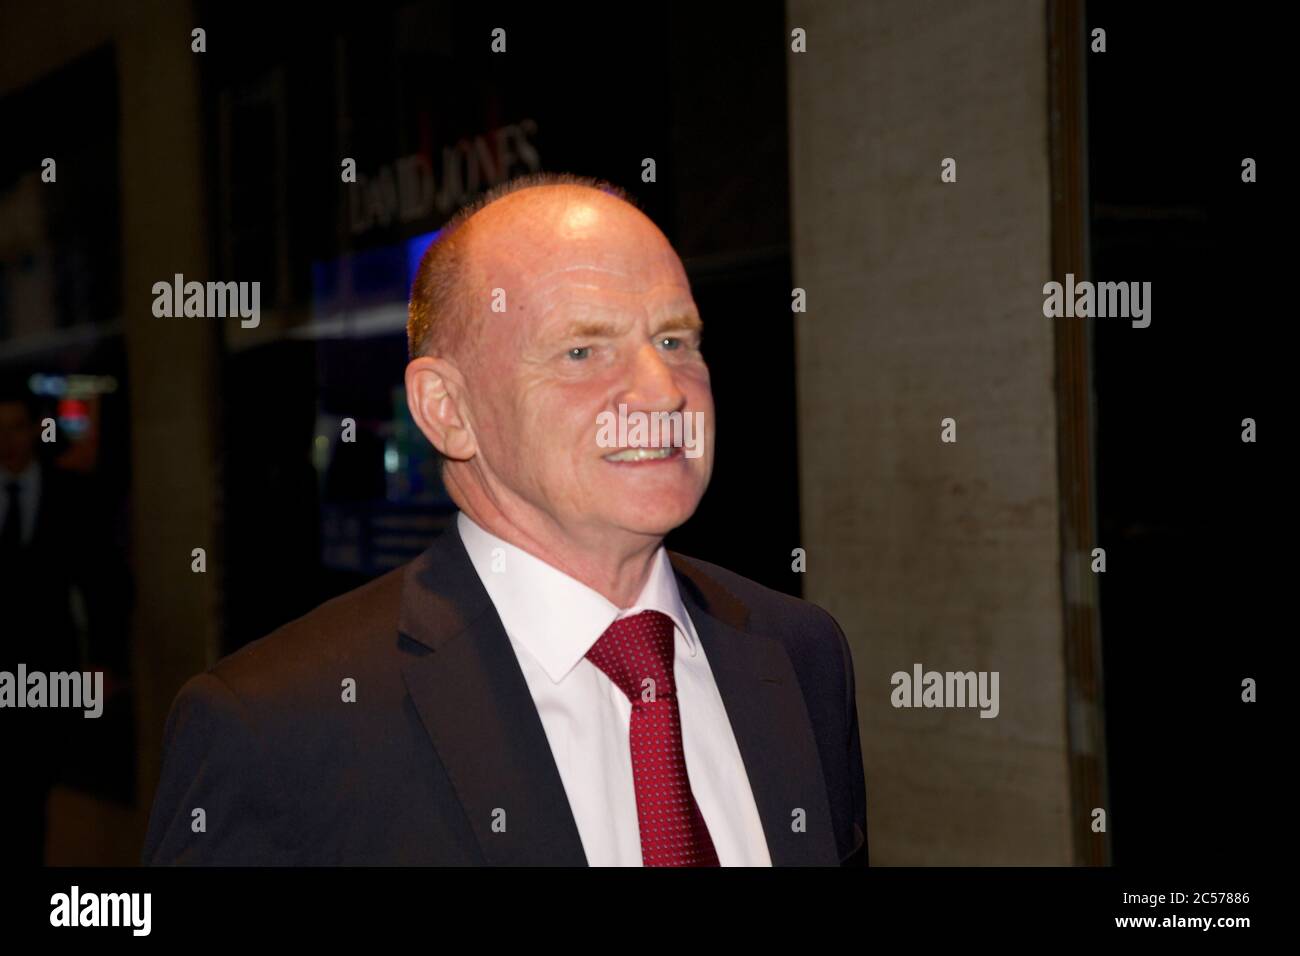 Brian McGlynn, l'un des principaux experts australiens en contrats d'infrastructure à long terme, quitte l'ICAC (Independent Commission Against corruption) Banque D'Images